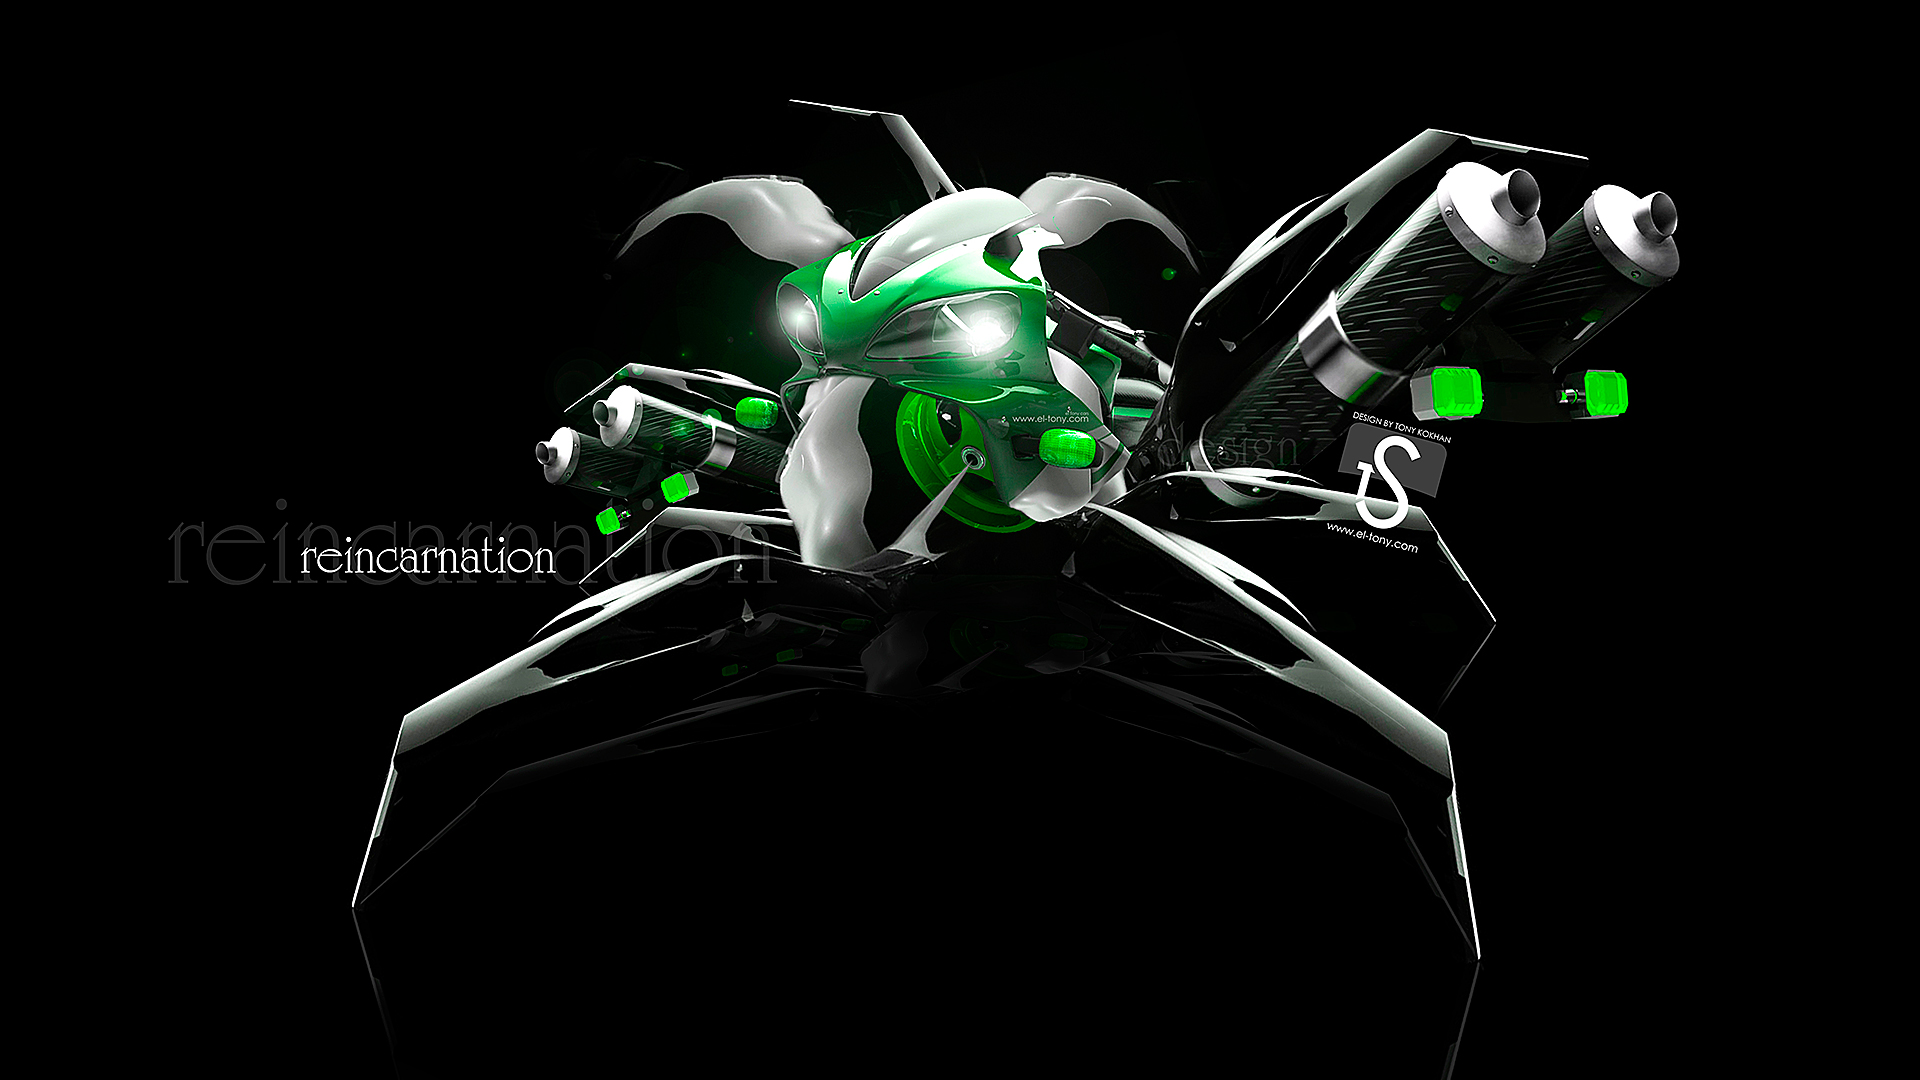 Reincarnation Moto Green Robot Car HD